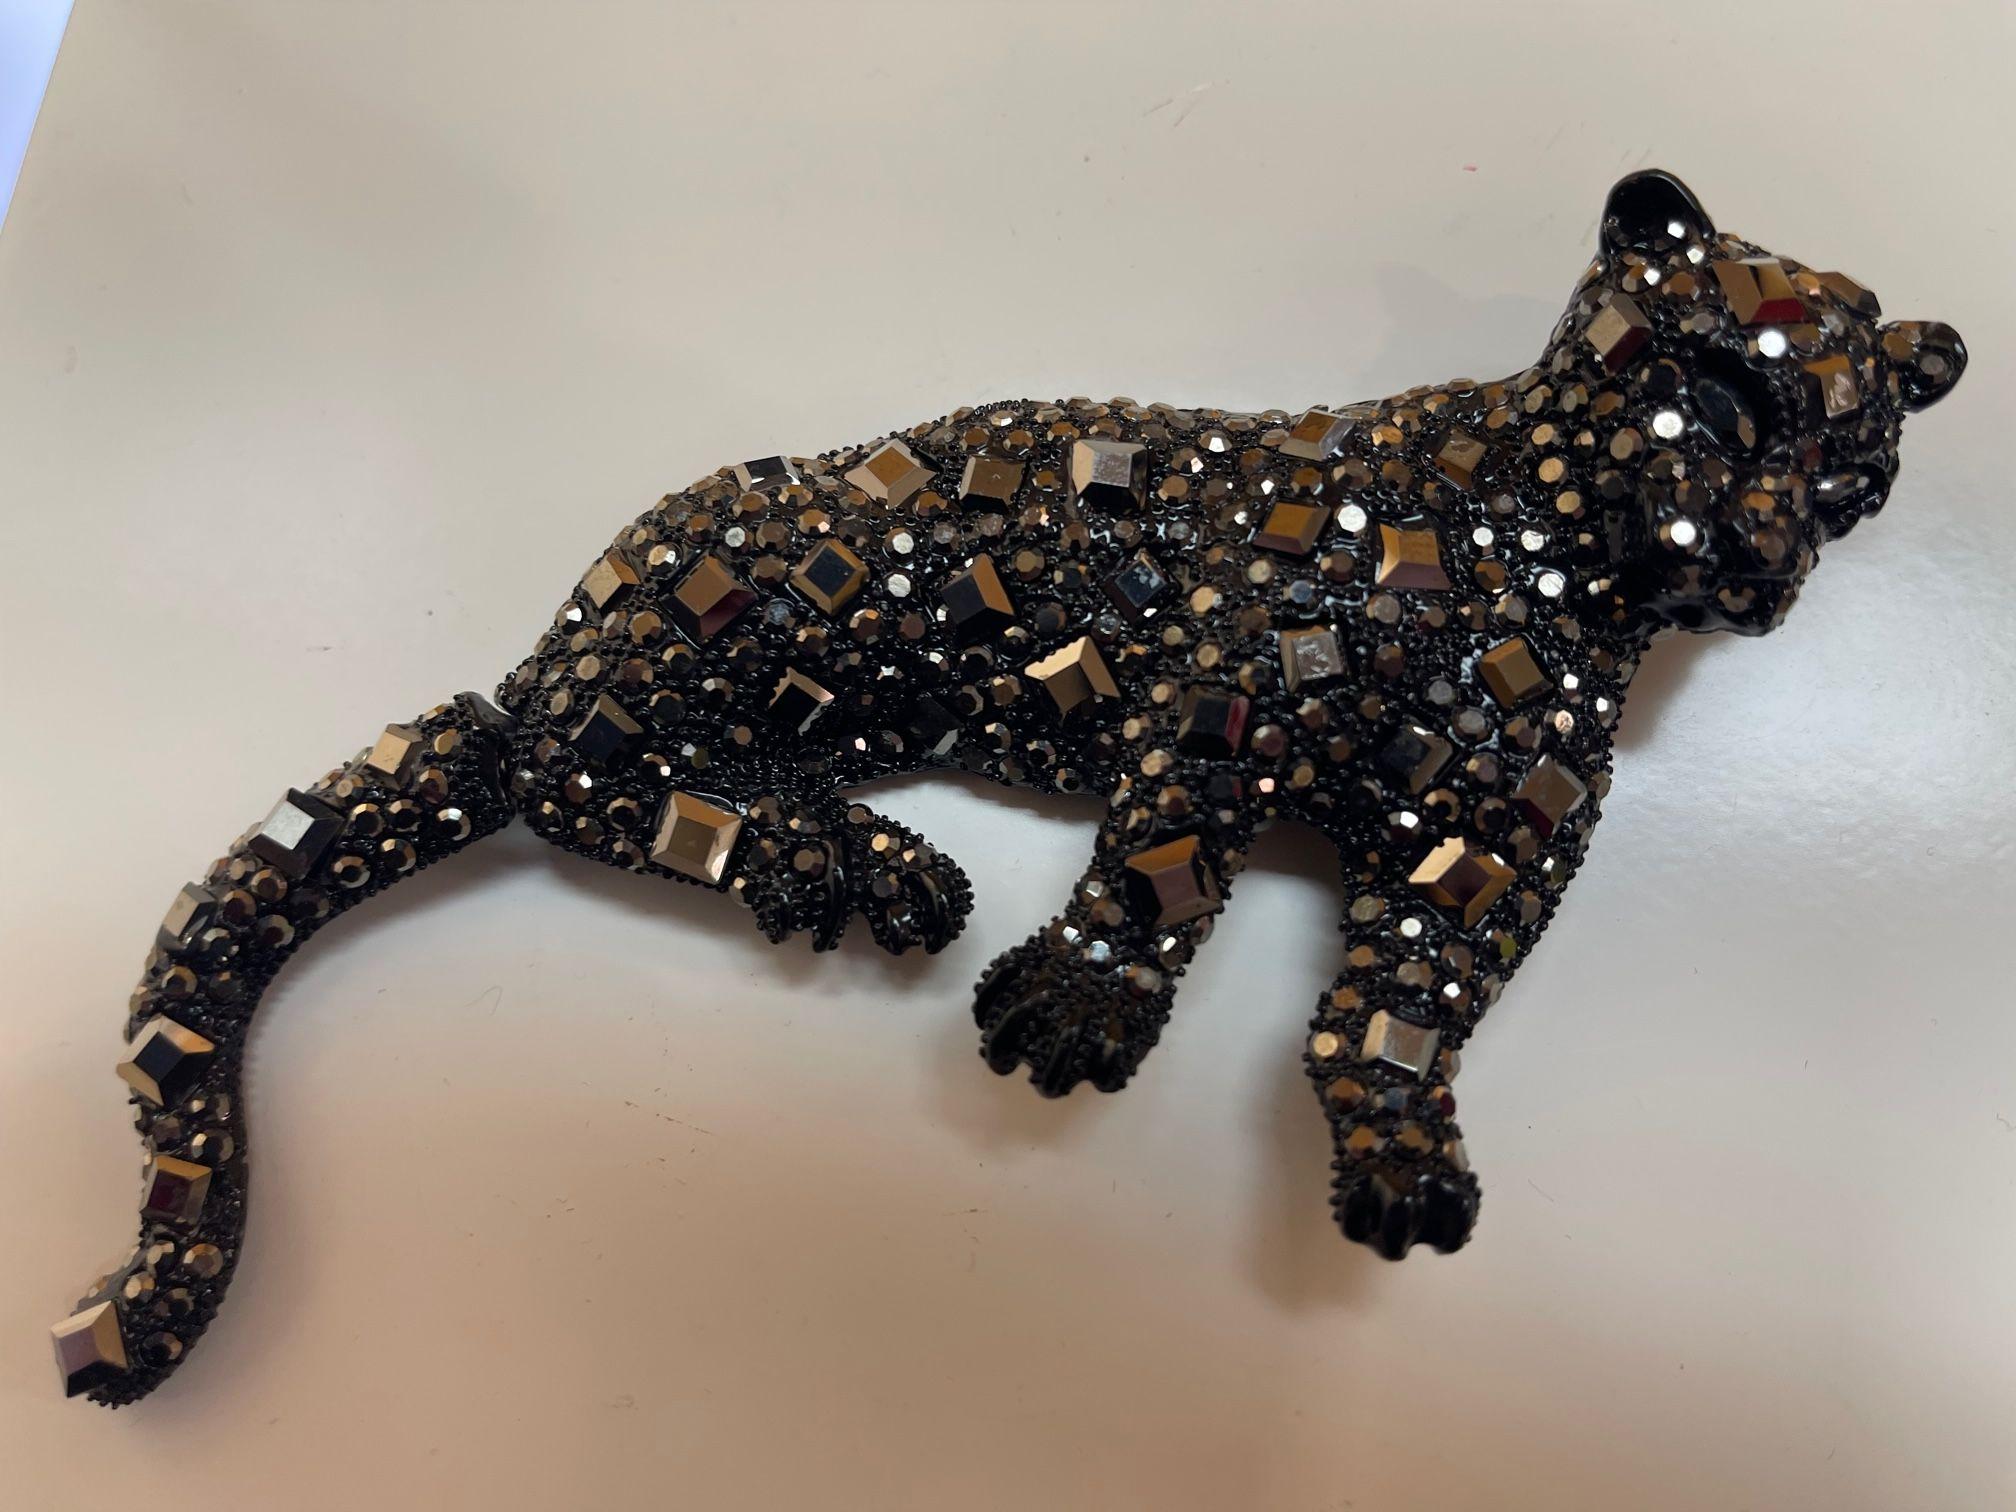 Tout simplement fabuleux ! Vintage Designer Big Black Cheetah Cat with articulated tail Brooch Pendentif. Orné de diamants noirs étincelants et de faux cristaux de forme ronde. Dynamique en noir étincelant ! Environ 5